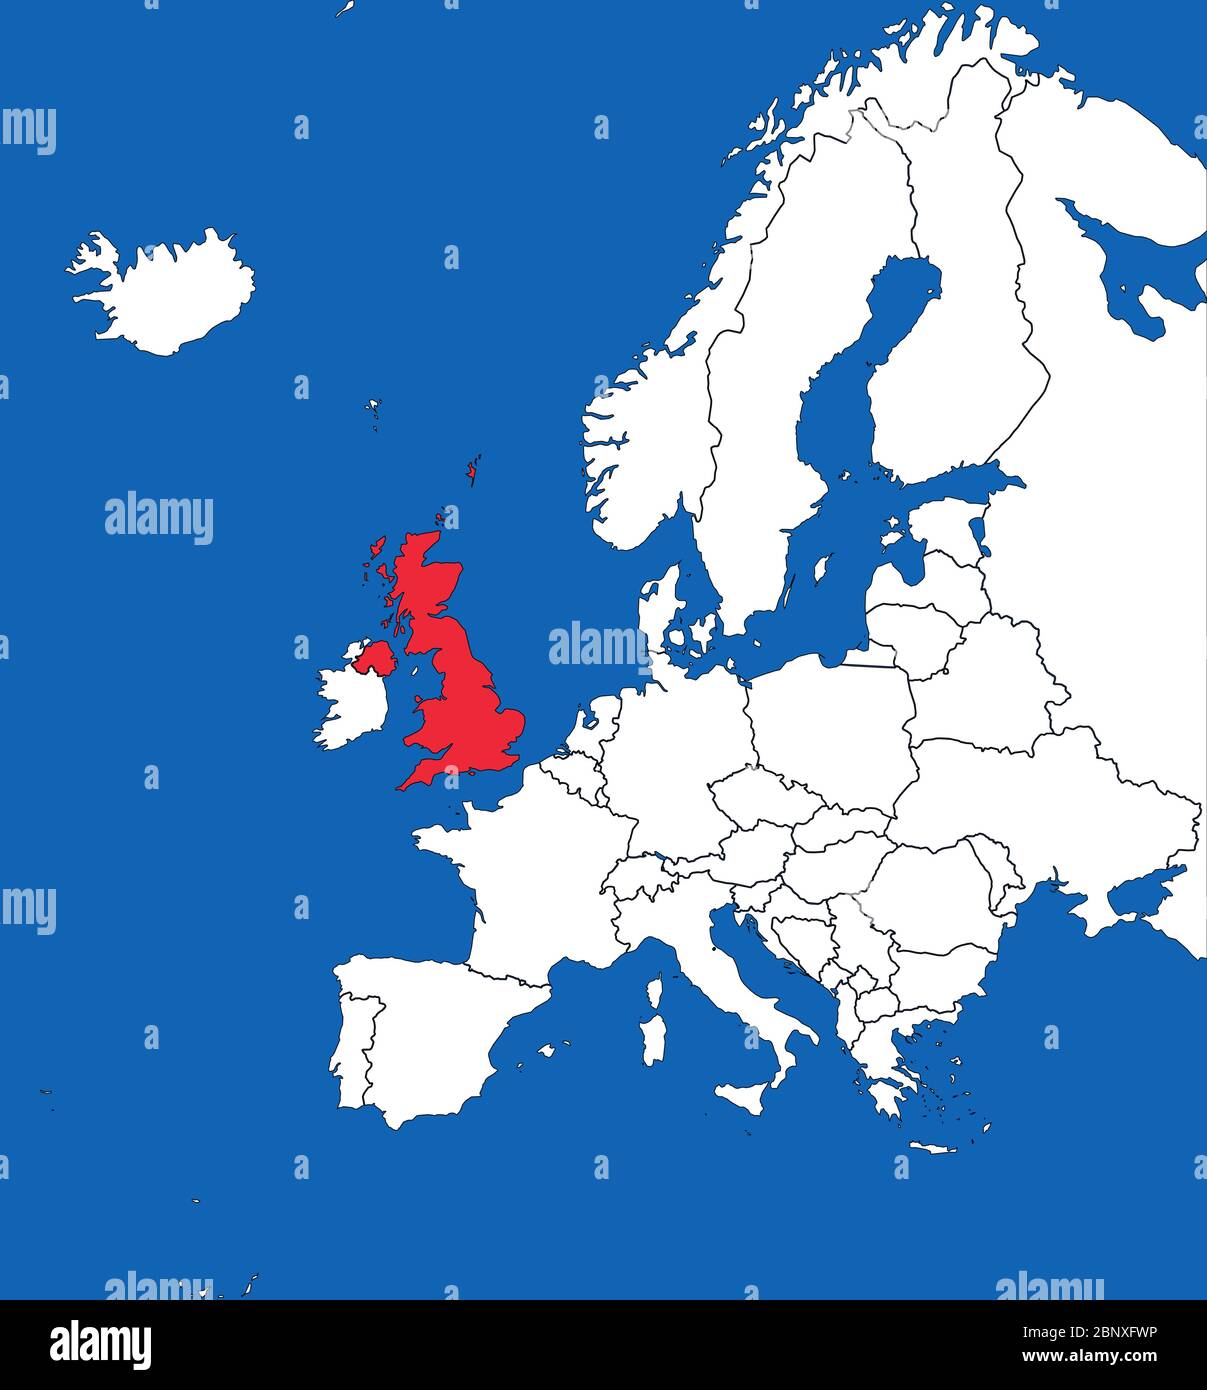 Vereinigtes Königreich auf der europakarte hervorgehoben. Blauer Meereshintergrund. Perfekt für Hintergründe, Hintergrund, Aufkleber, Banner, Etikett, Poster, Diagramm und Tapete. Stock Vektor